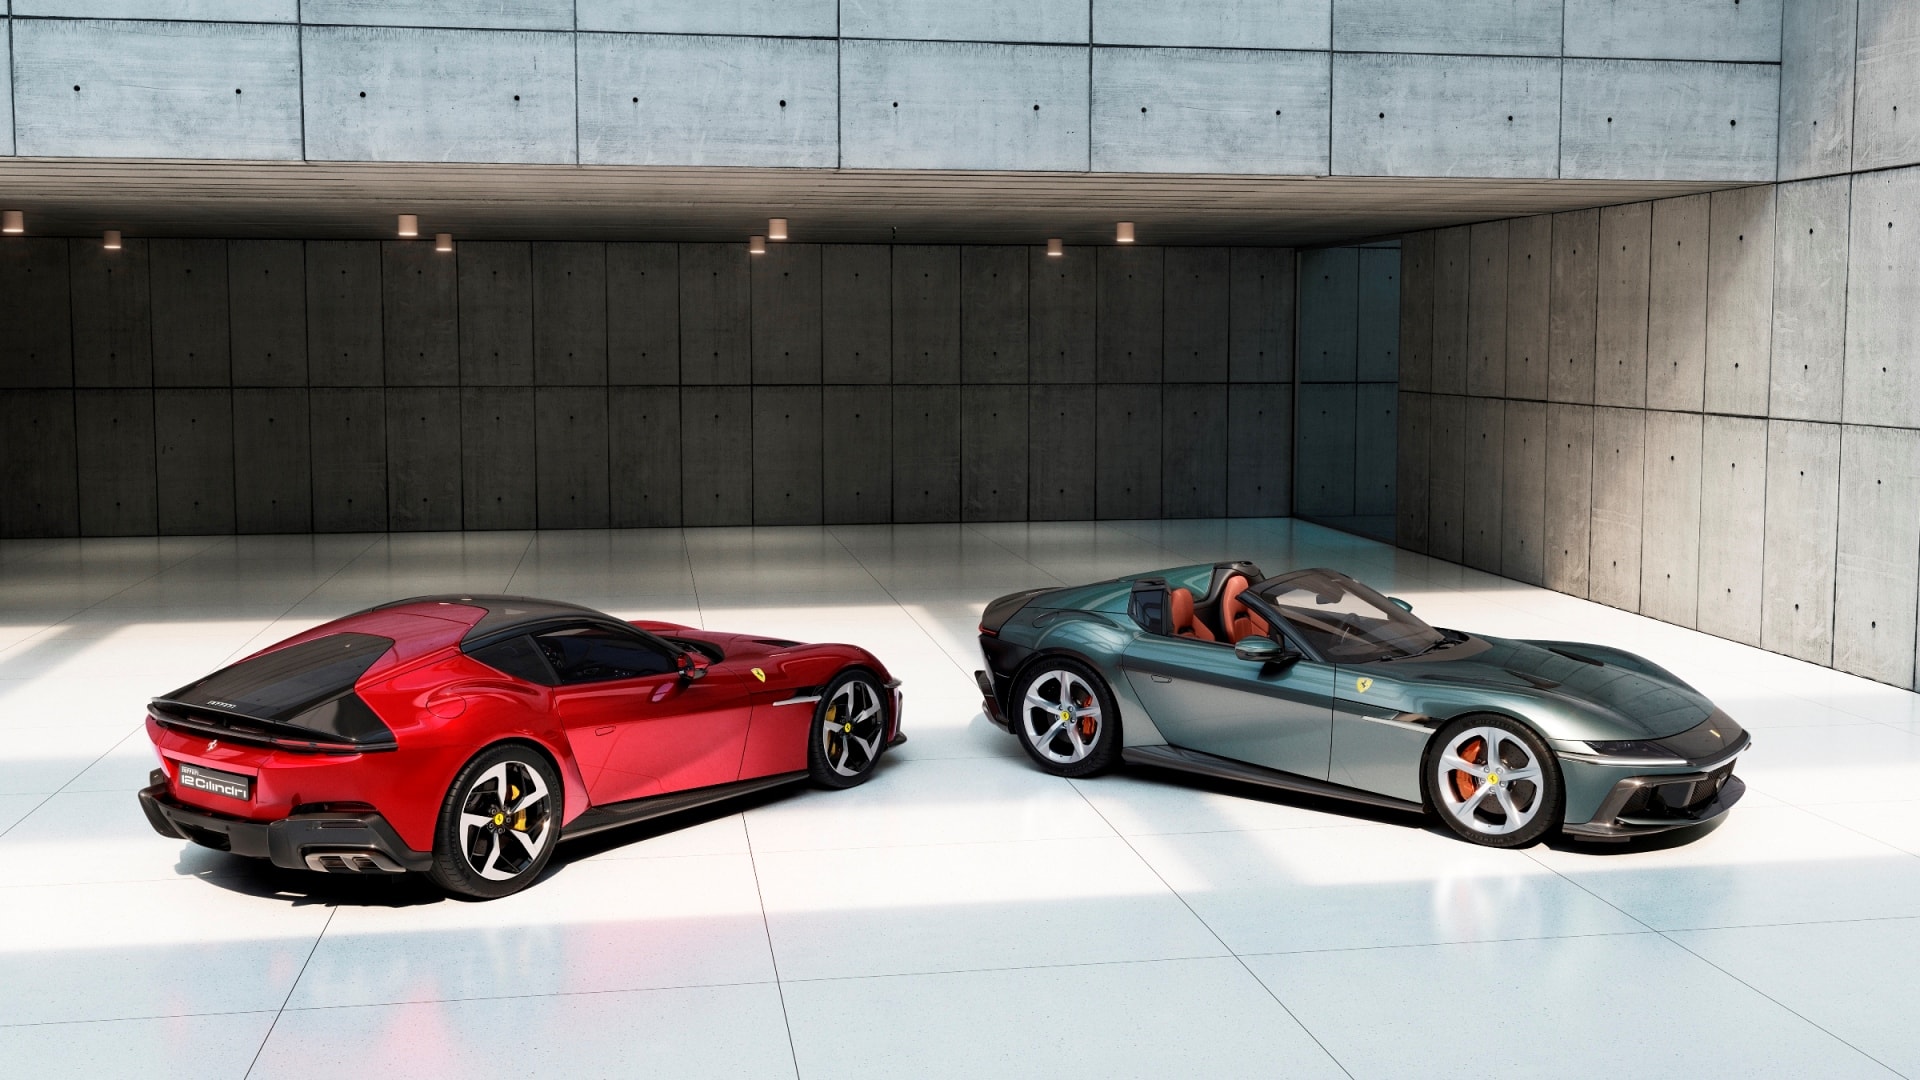 12Cilindri có ngoại thất khá khác biệt so với các dòng xe Ferrari hiện tại với phong cách sắc sảo, góc cạnh hơn khá nhiều.